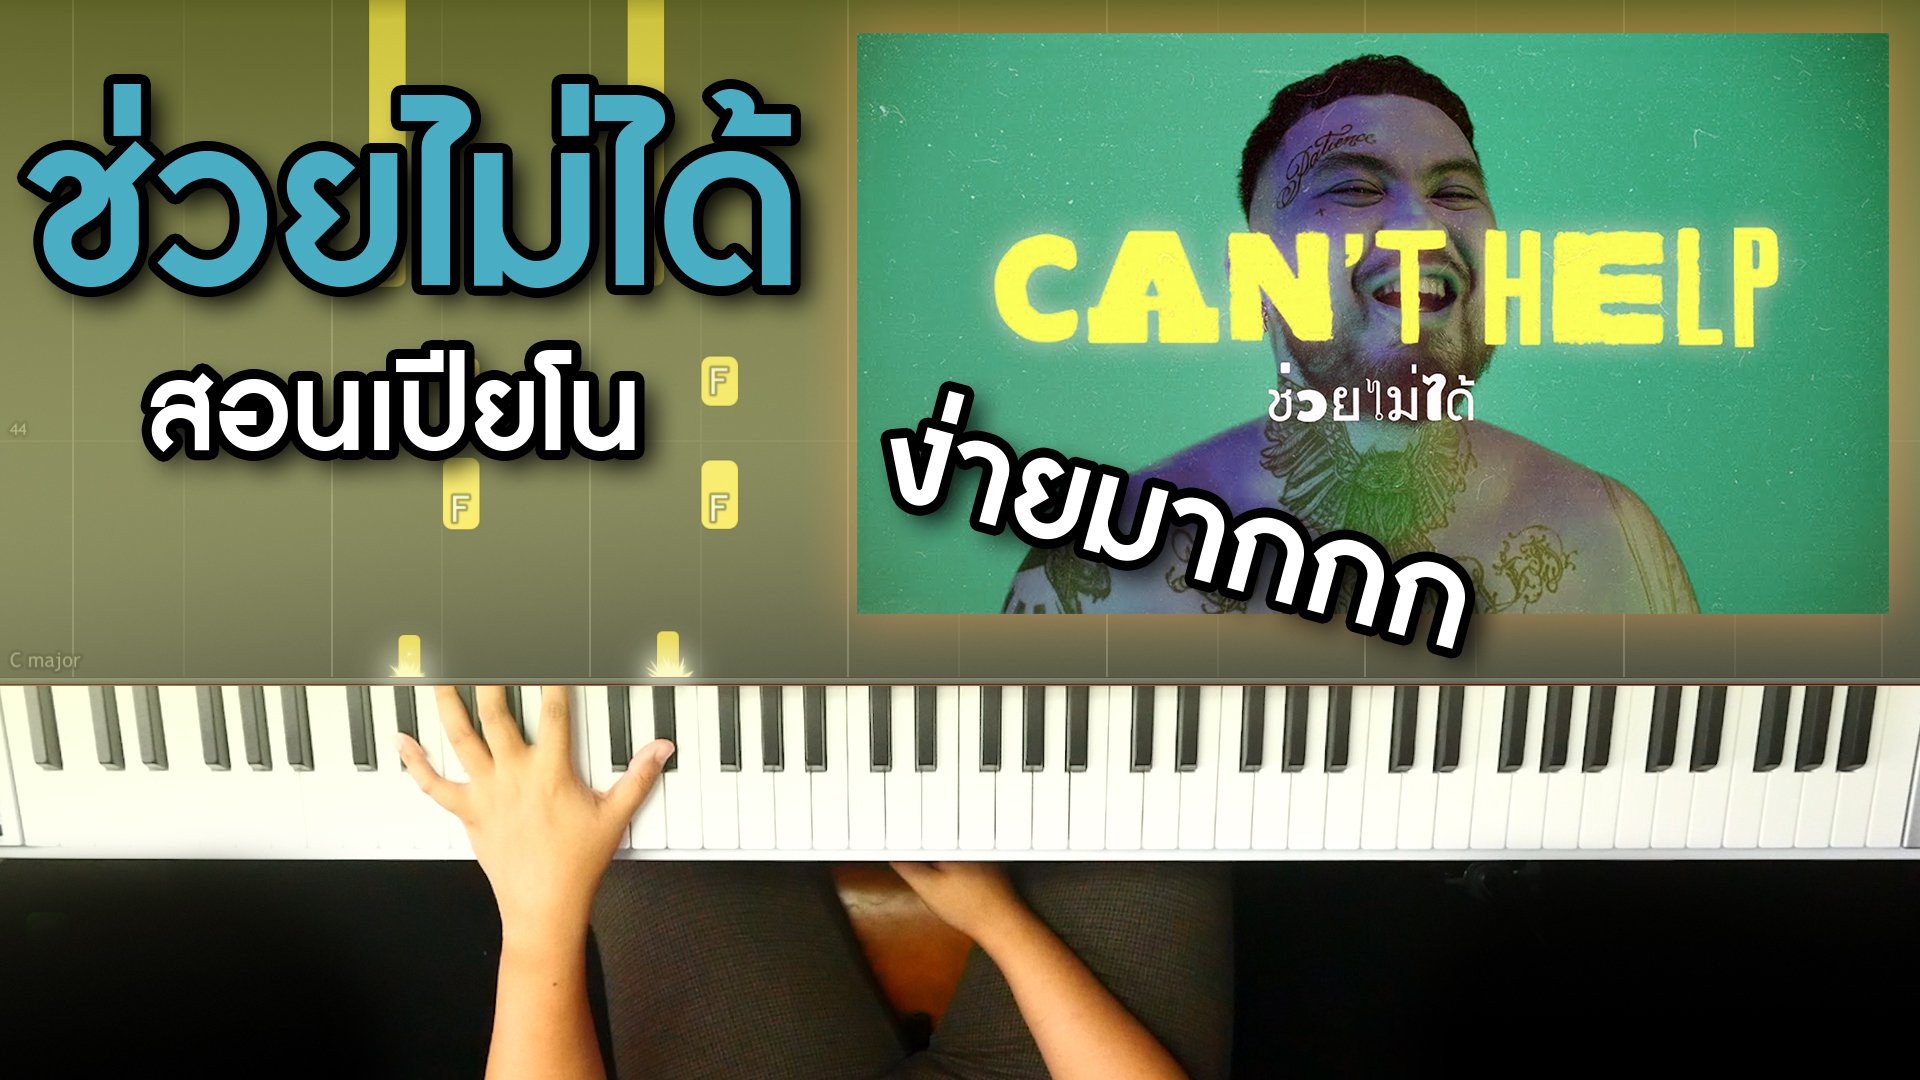 สอนเปียโน เพลง ช่วยไม่ได้ (CAN'T HELP) - URBOYTJ เล่นเเบบง่ายๆ! โน๊ตเพลงฟรี!